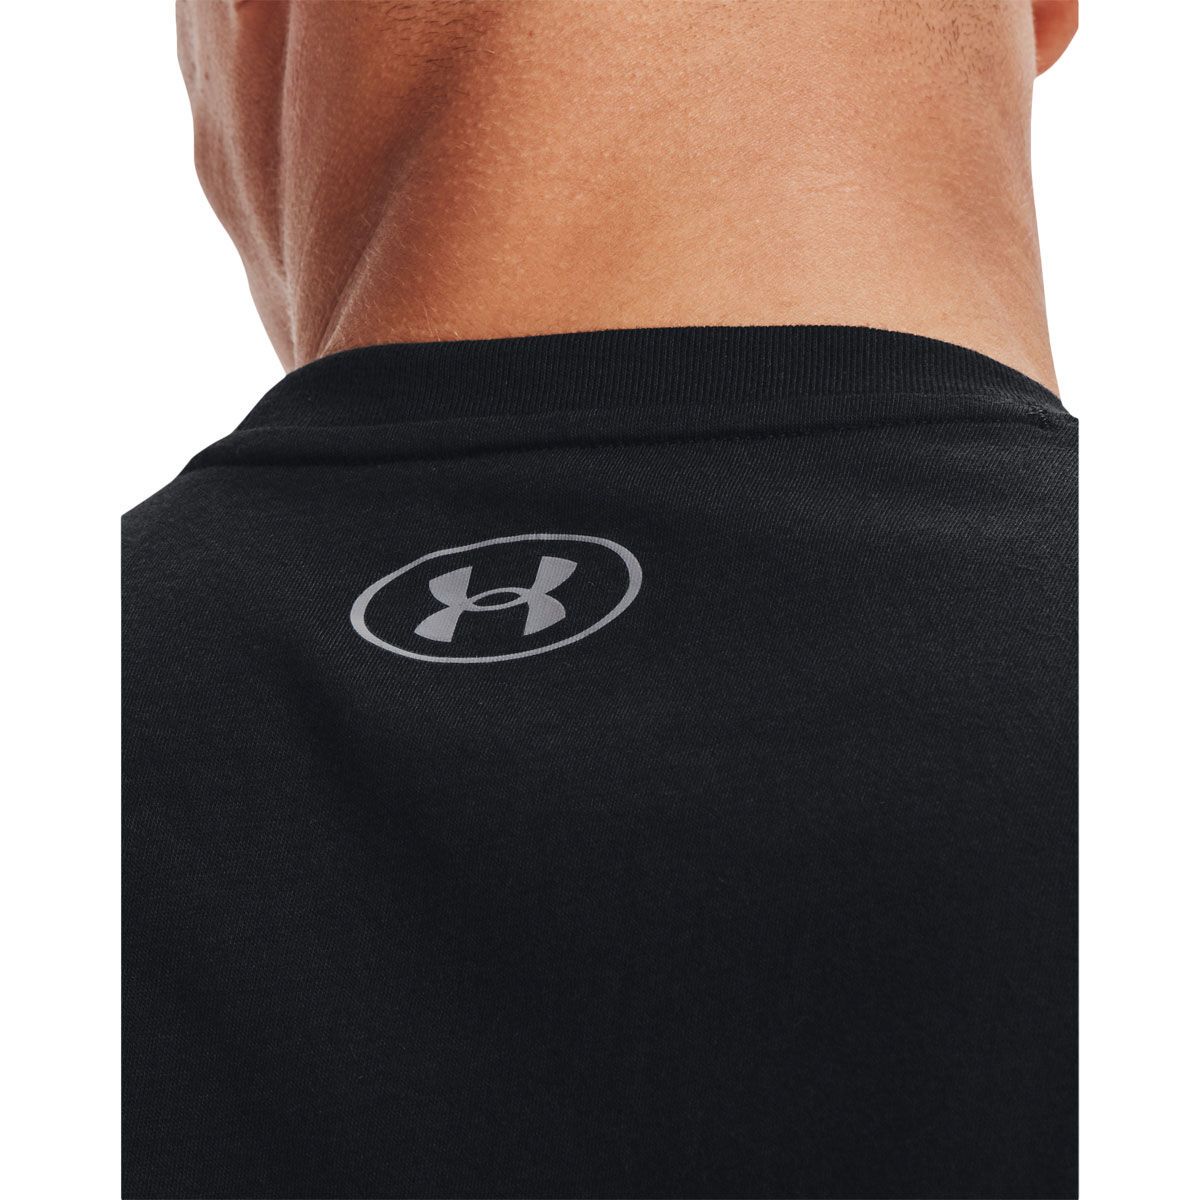 Delaware State Hornets Large Logo on Thigh Black Yoga Leggings for Women  2.5 Waist Tights